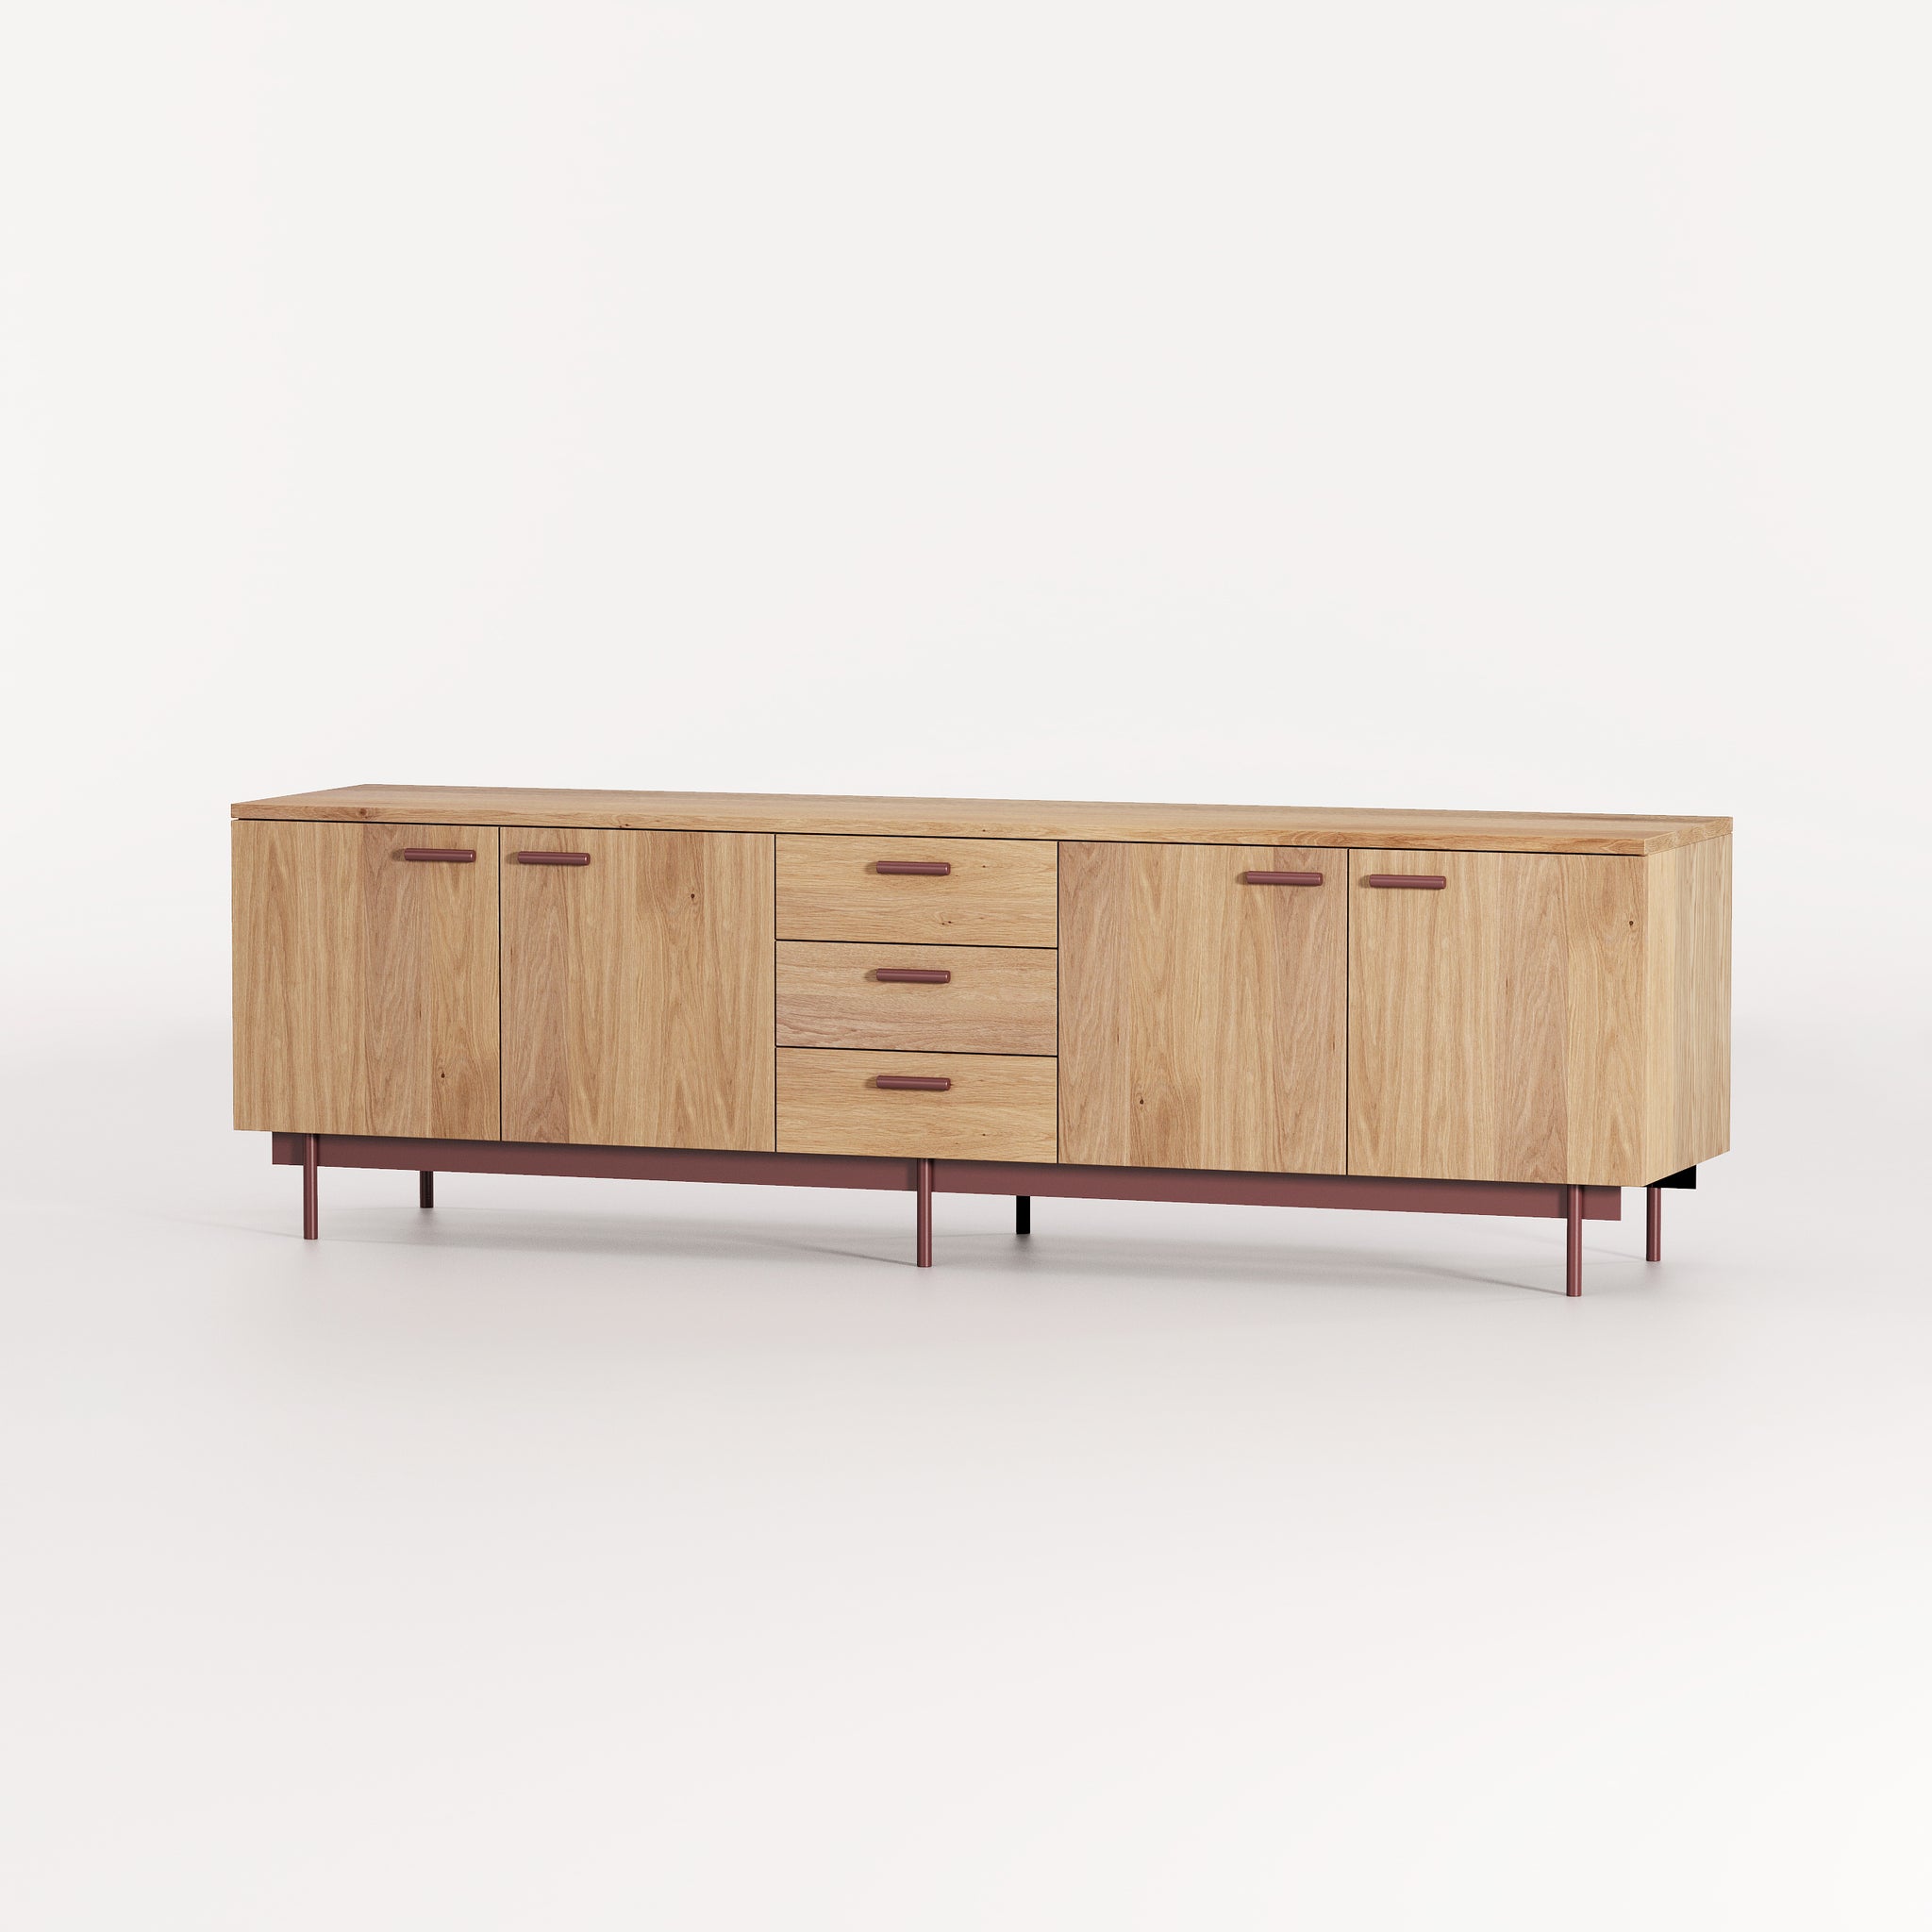 Park cabinet by Mast Furniture. Luxury storage 